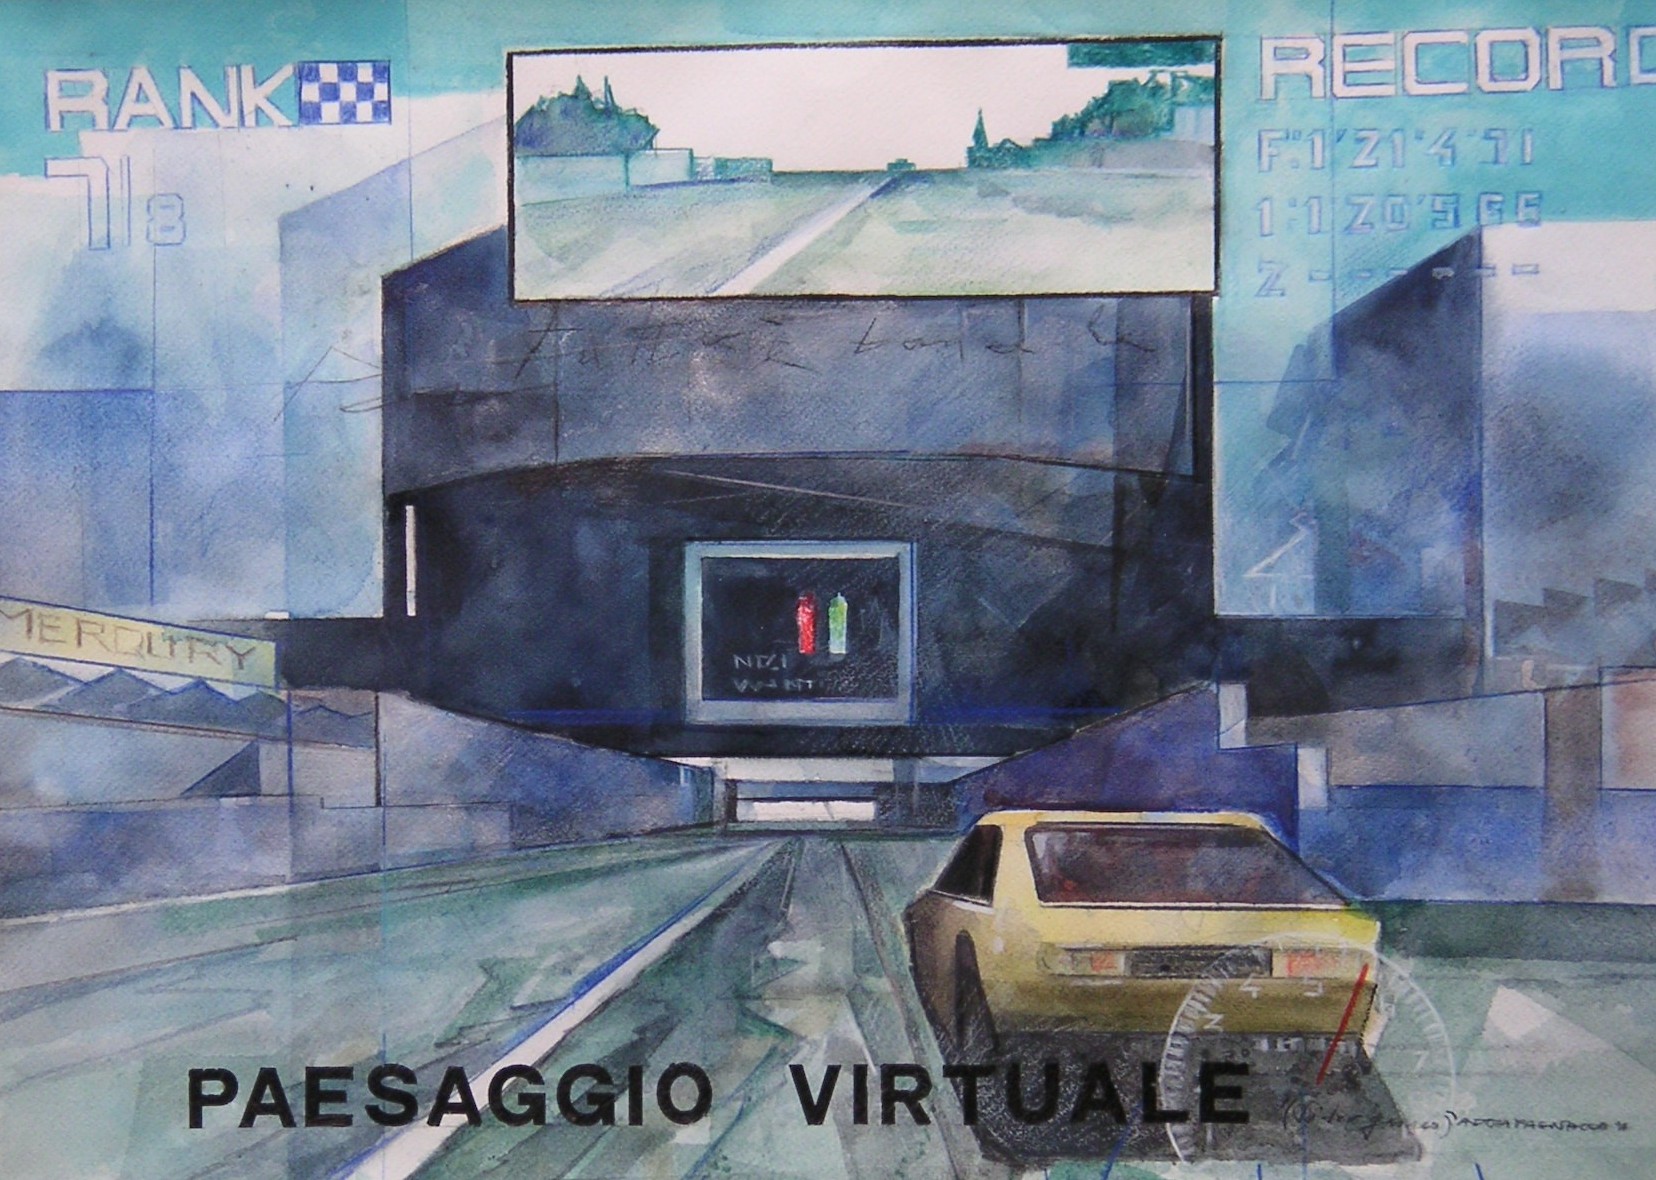 Andrea Pagnacco, Paesaggio virtuale